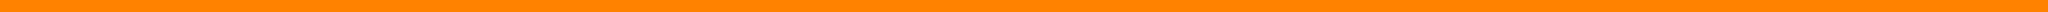 Orange bar